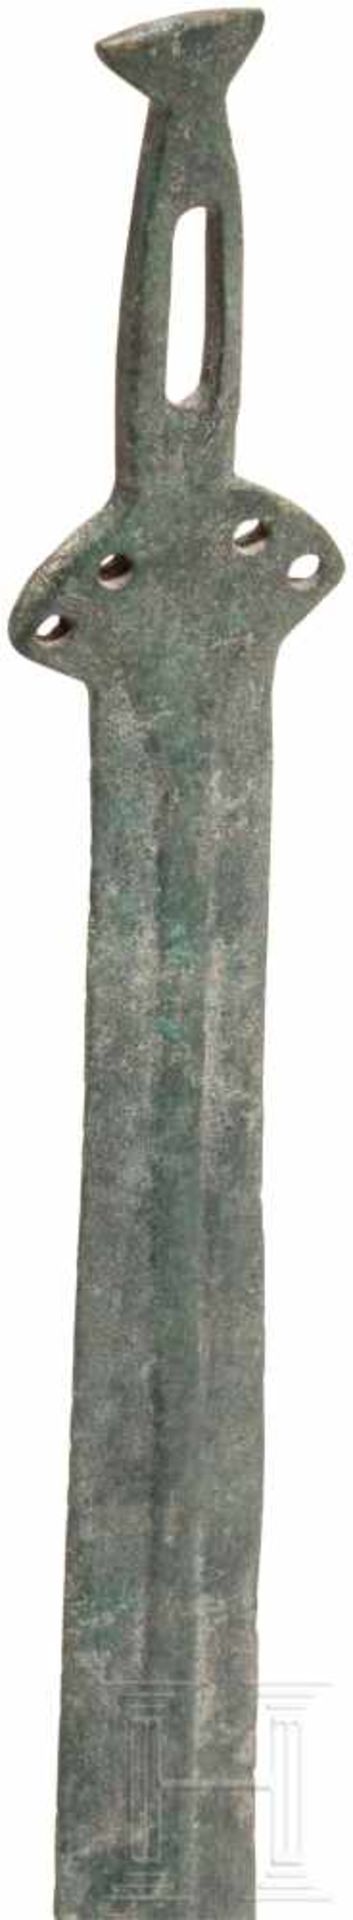 Griffzungenschwert, Frankreich, Späte Bronzezeit, 11. - 10. Jhdt. v. Chr.Bronze. Die Klinge des - Bild 4 aus 4